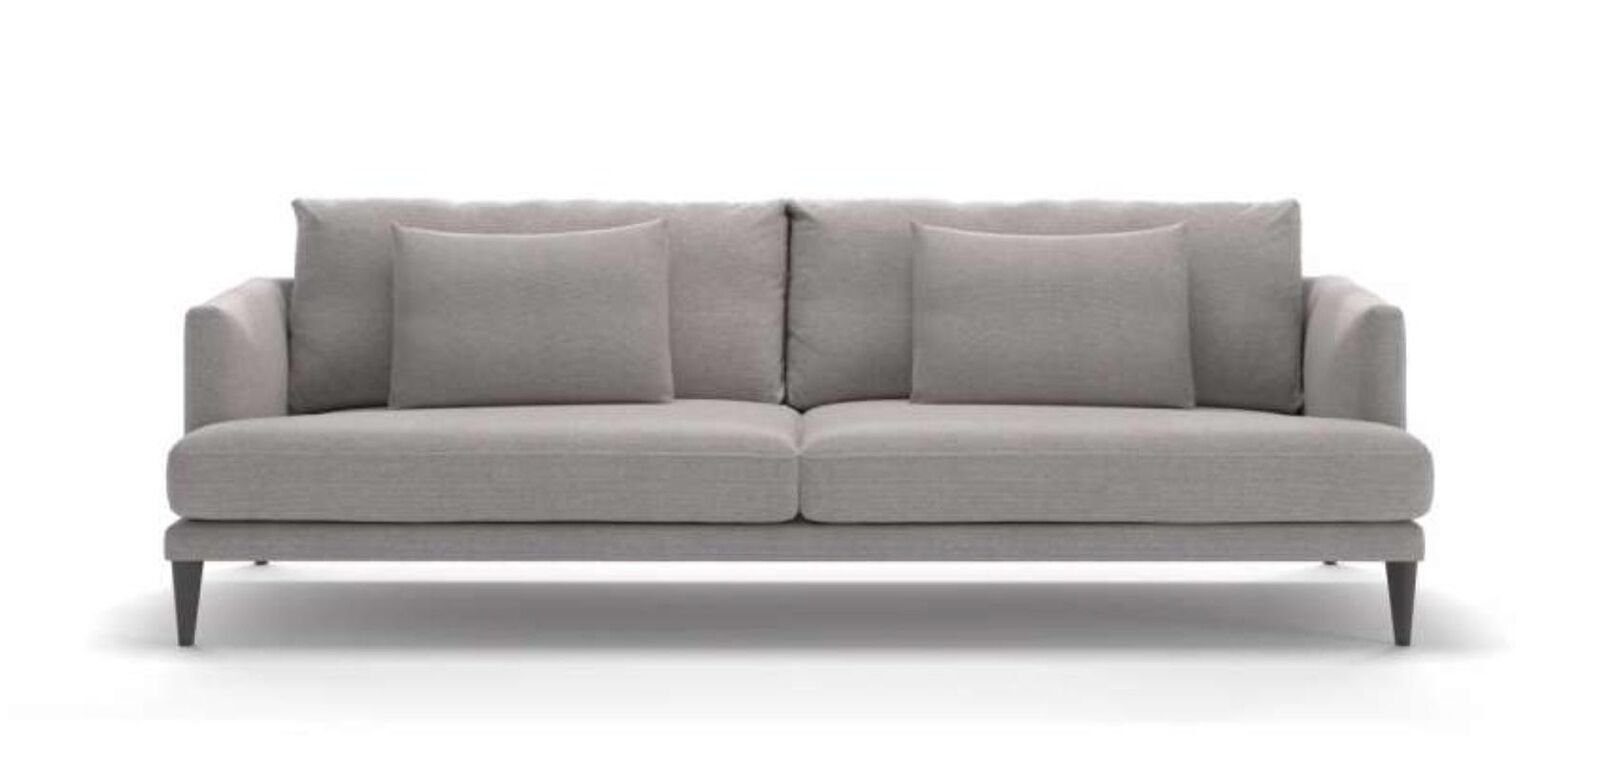 Polstergruppenset 3 Sofa Teile, Made Europa Sofaeinrichtung JVmoebel Luxus, in Couchensemble Graues